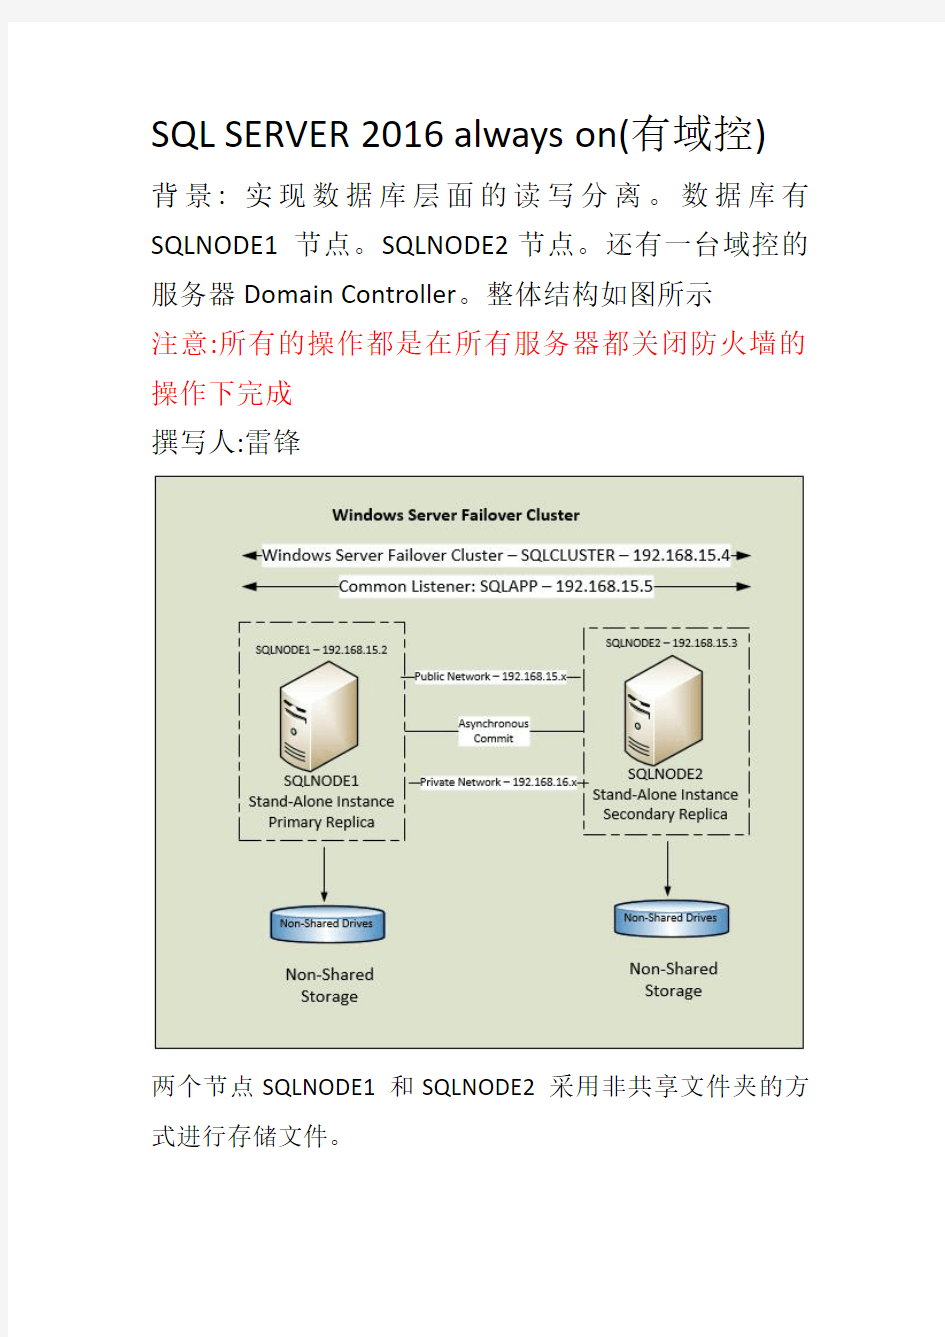 sql server 2016 域控always on安装文档